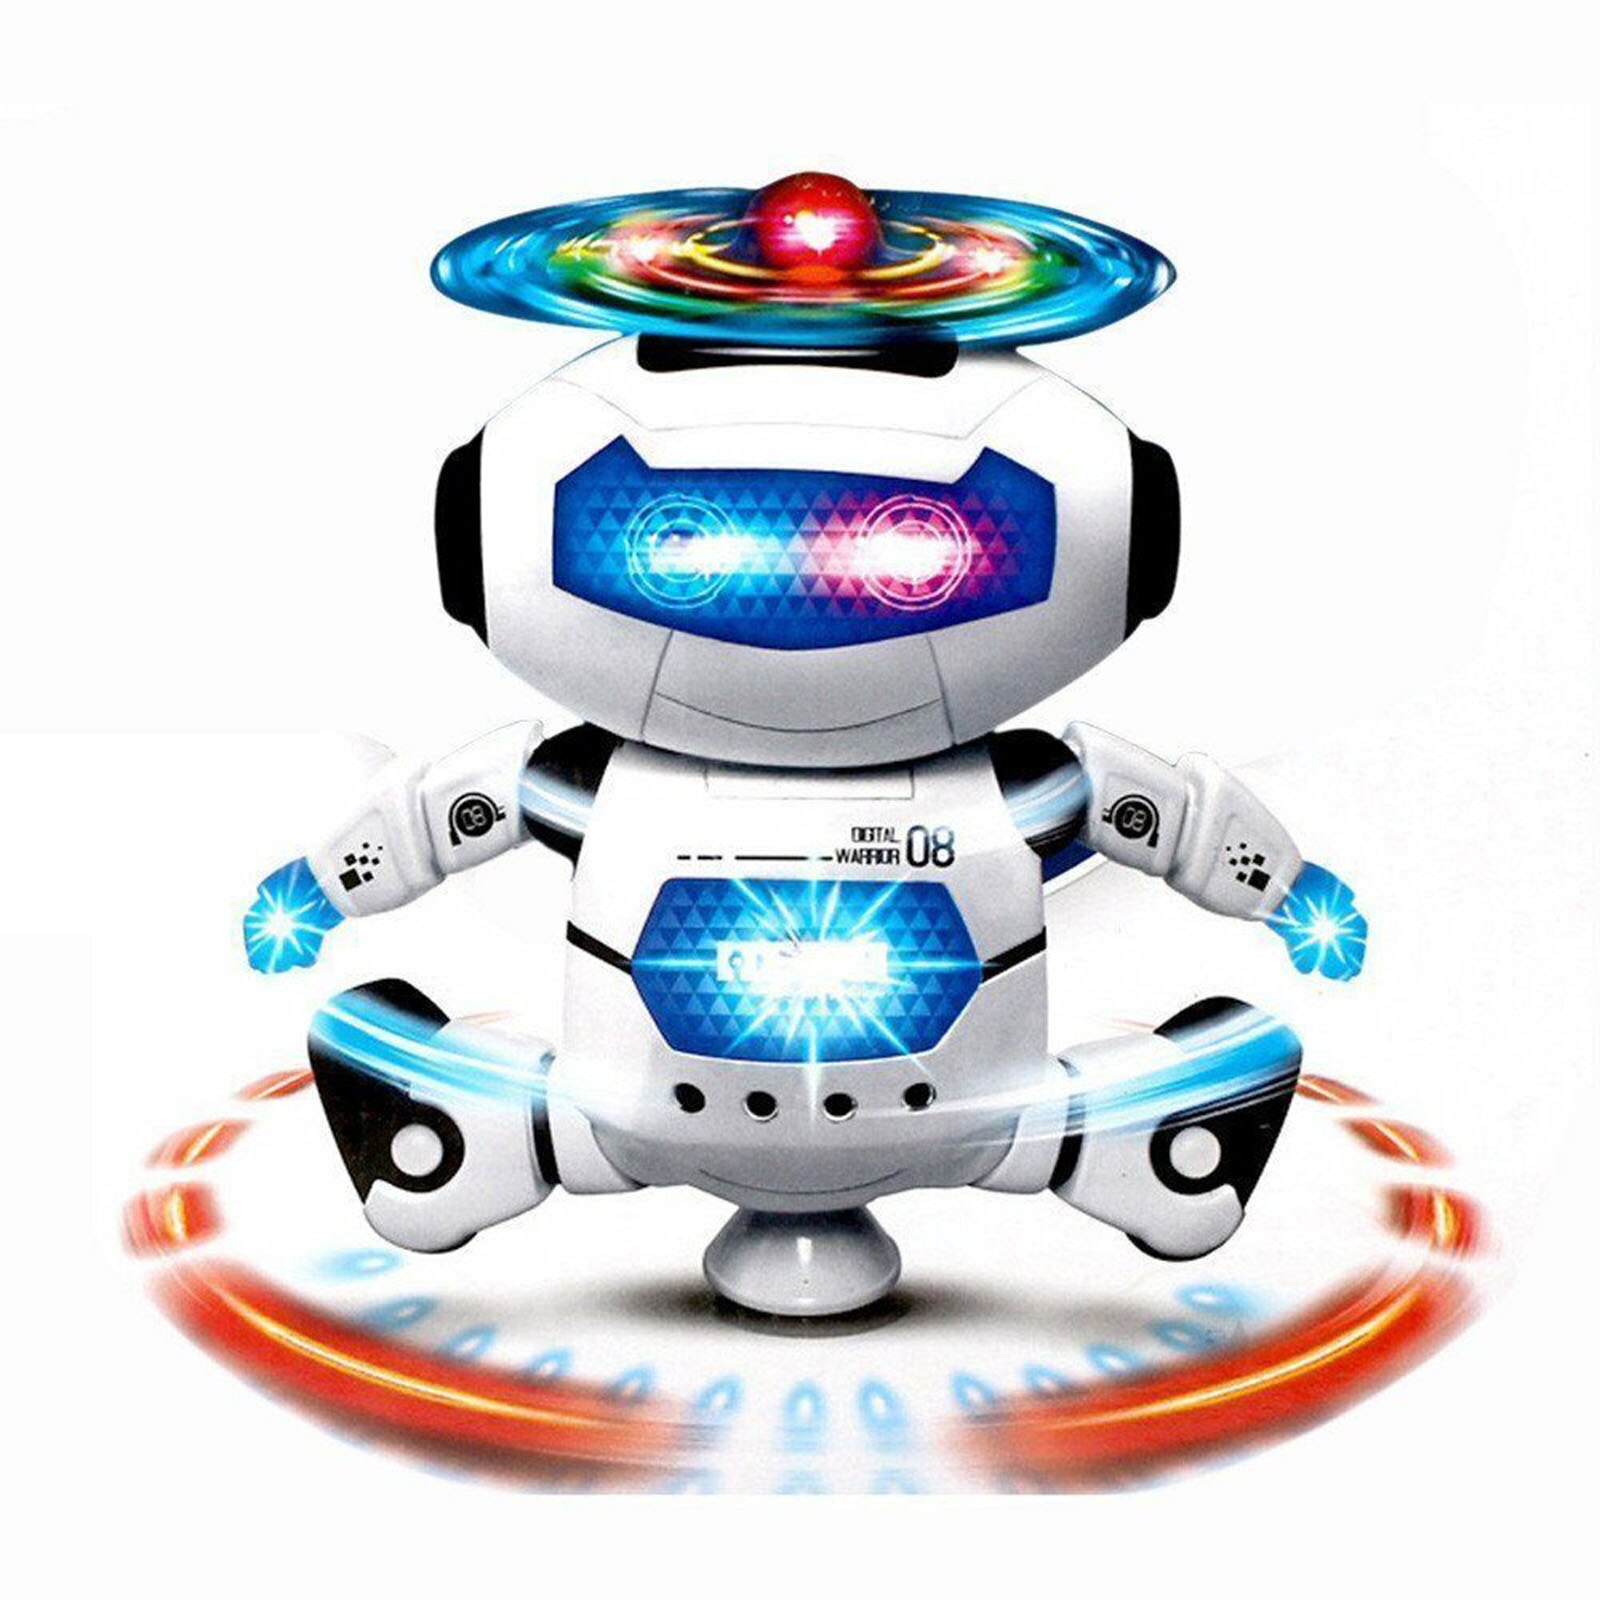 Ruimte Walking Dansen Robot Speelgoed 360 ° Body Spinning Robot Speelgoed Met Led Lichten Knipperen En Muziek Voor Peuter Kids